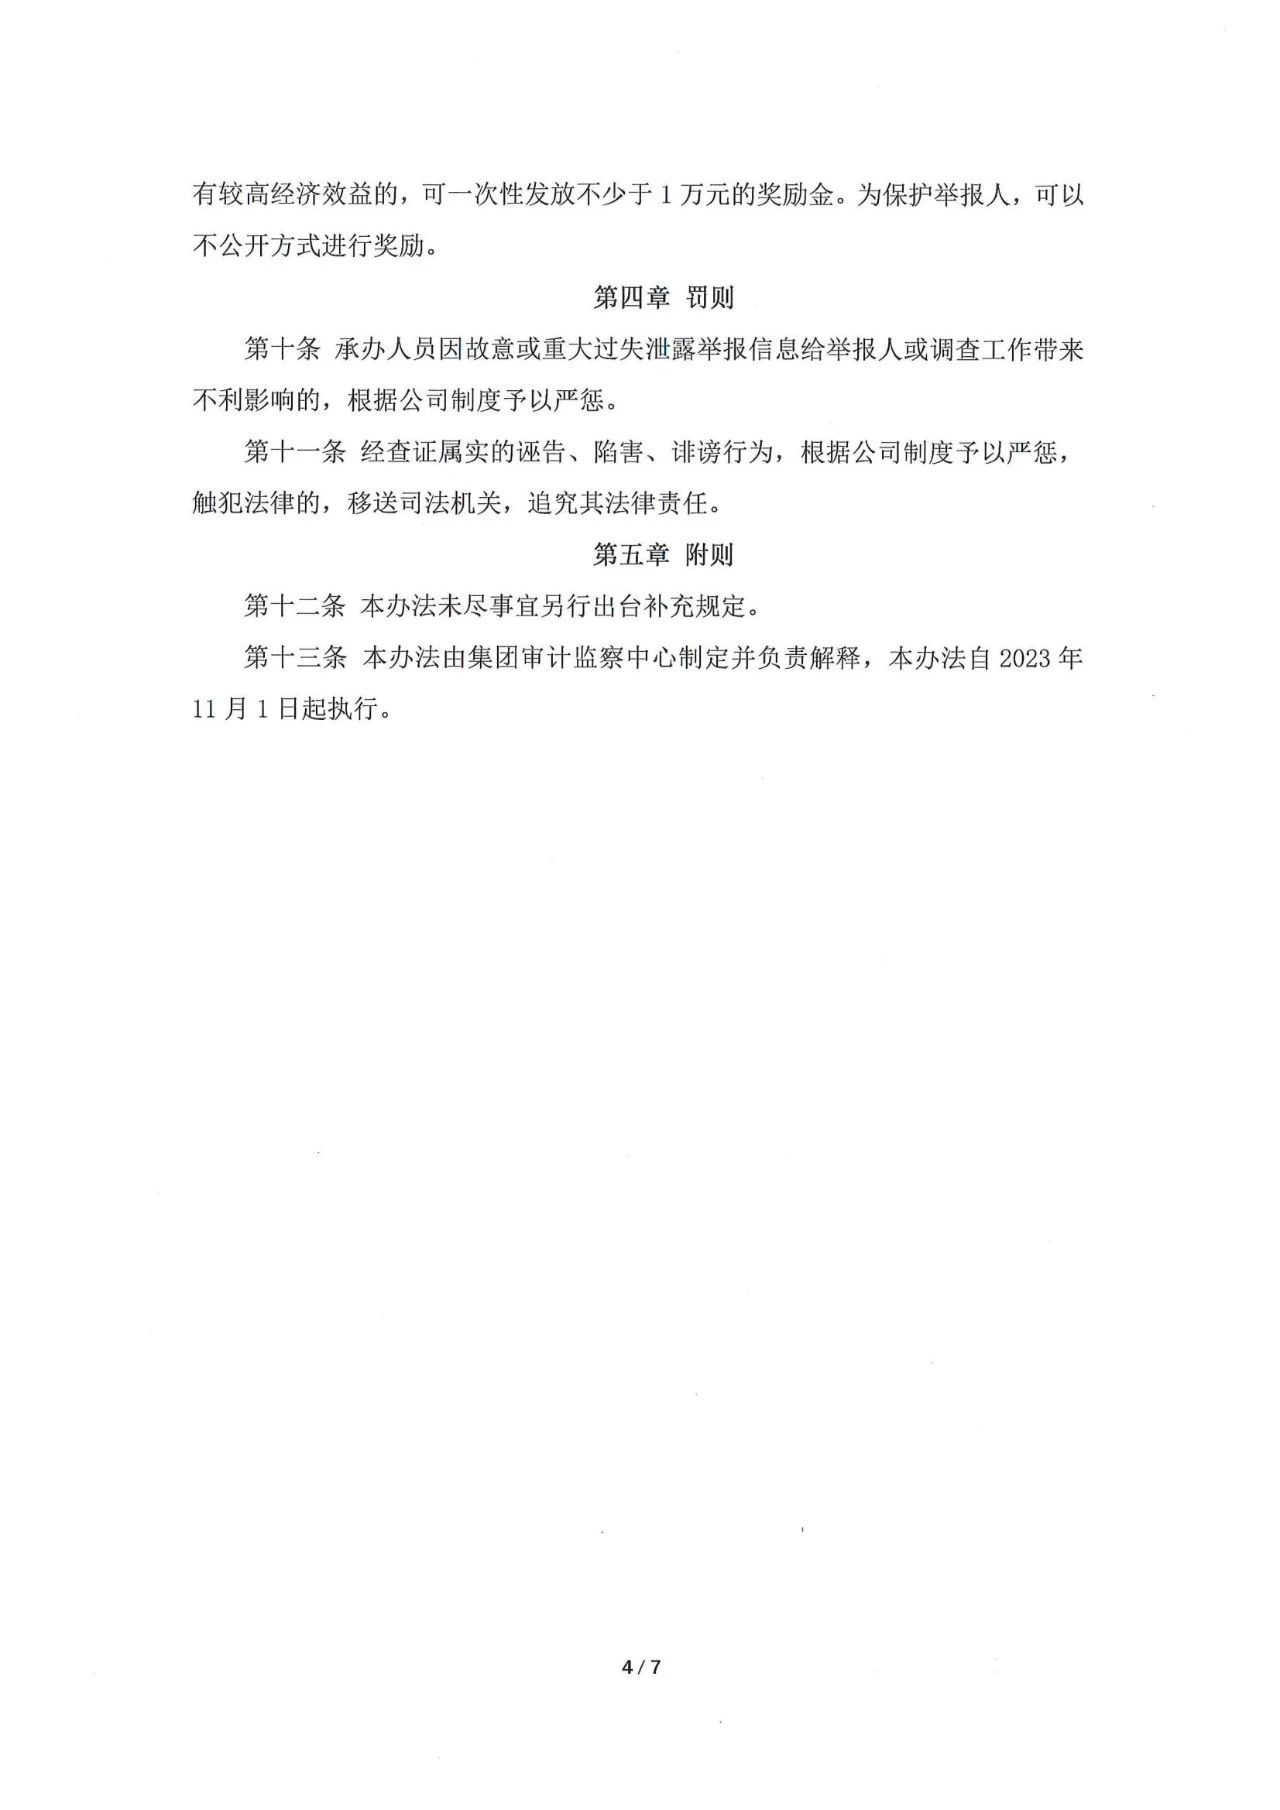 2023年京華隆興集團舉報信息管理辦法